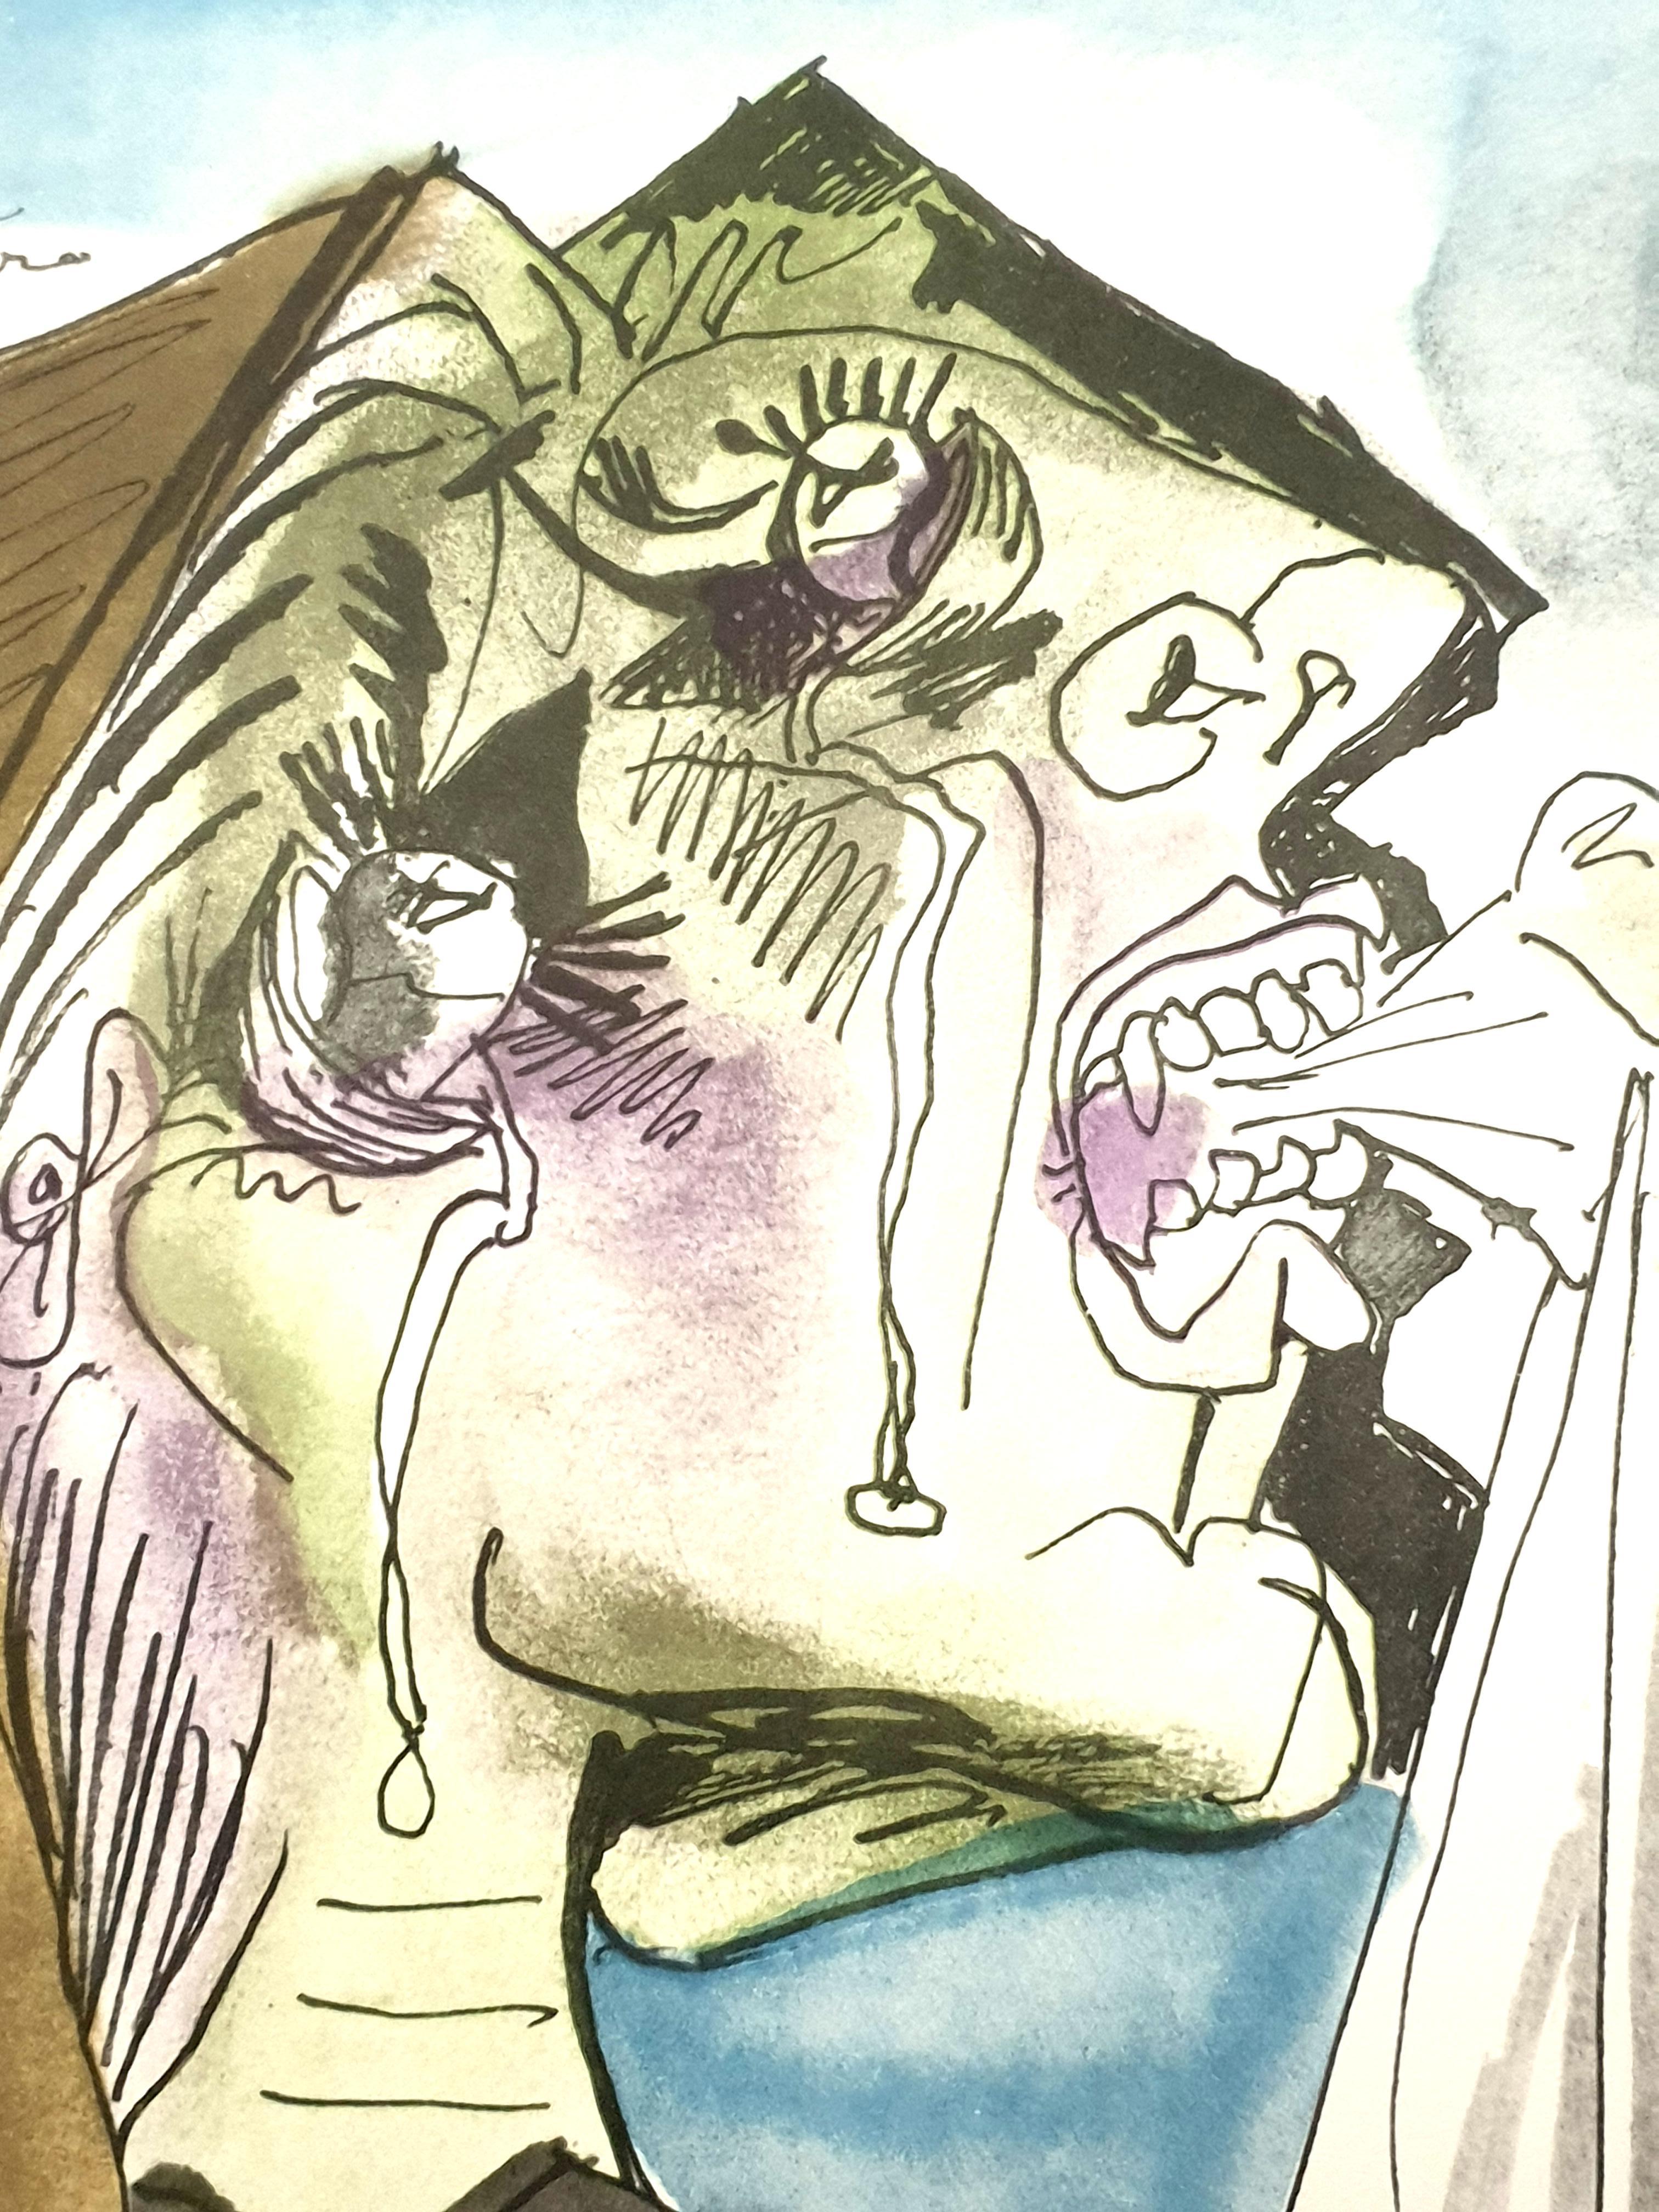 Pablo Picasso (nach) - Weinende Frau - Lithographie
1946
Herausgeber: Albert Carman
Abmessungen: 48 x 33 cm 
Aus Picassos fünften Zeichnungen